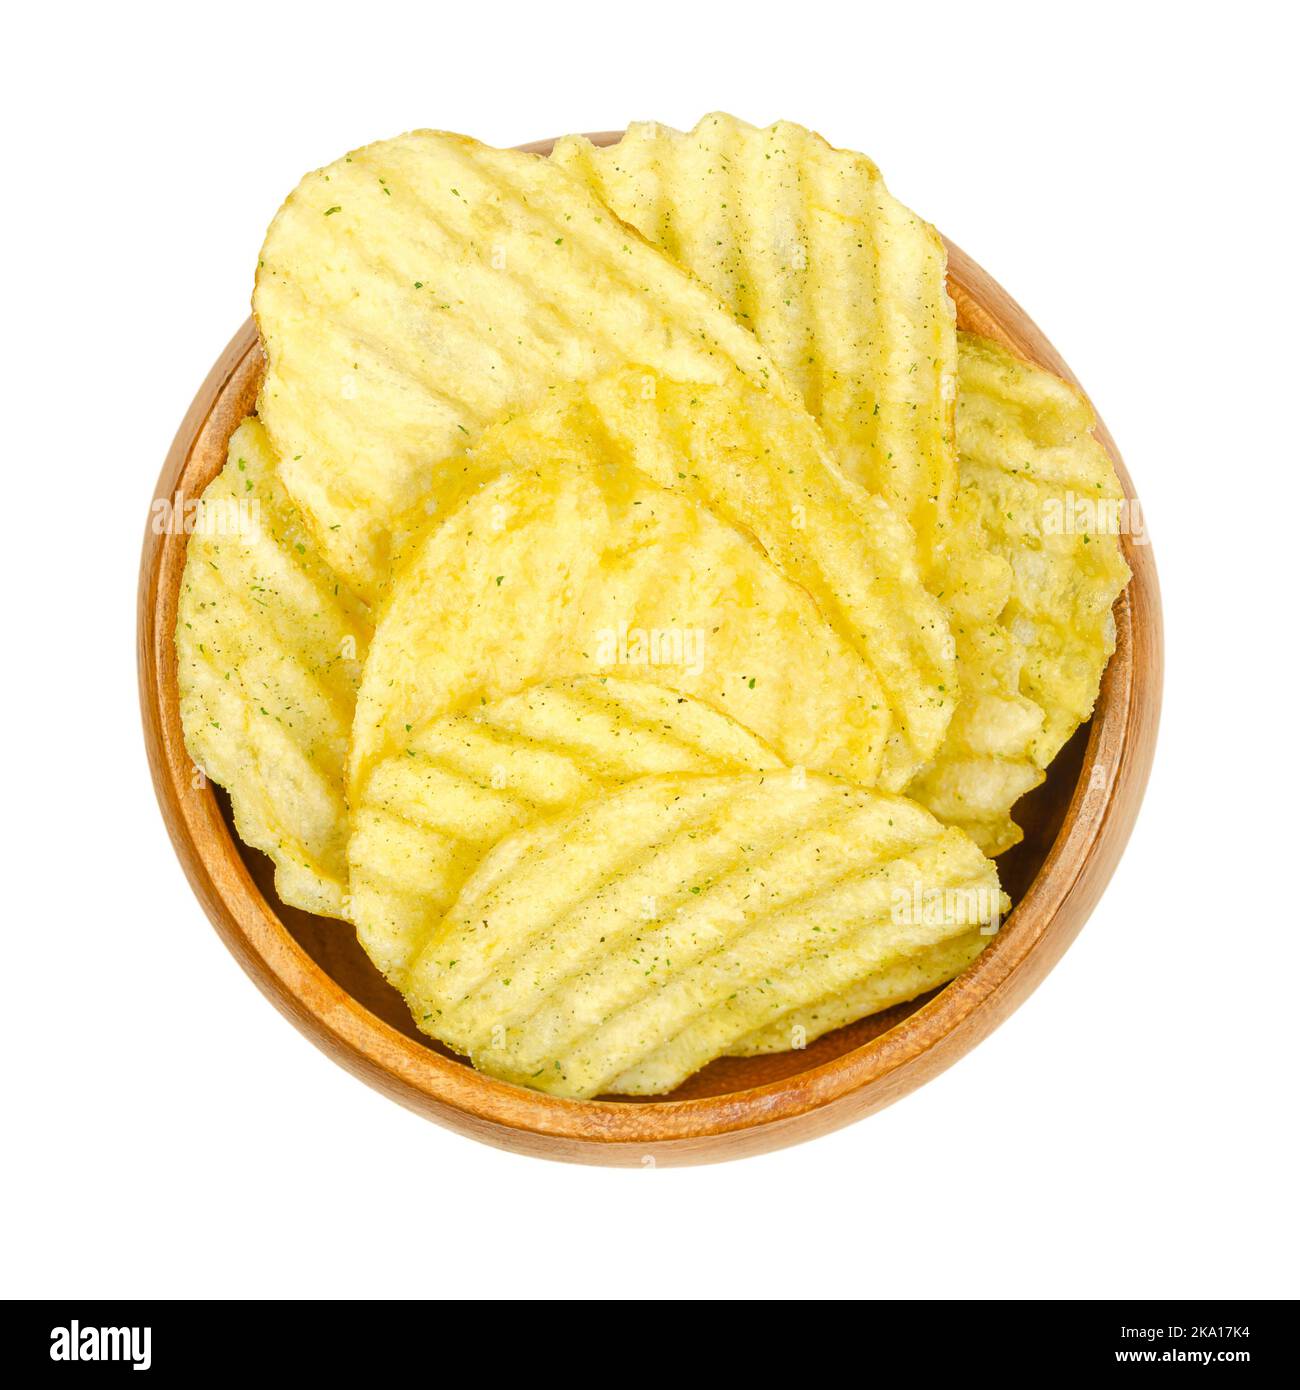 Ruffles potato chips fotografías e imágenes de alta resolución - Alamy